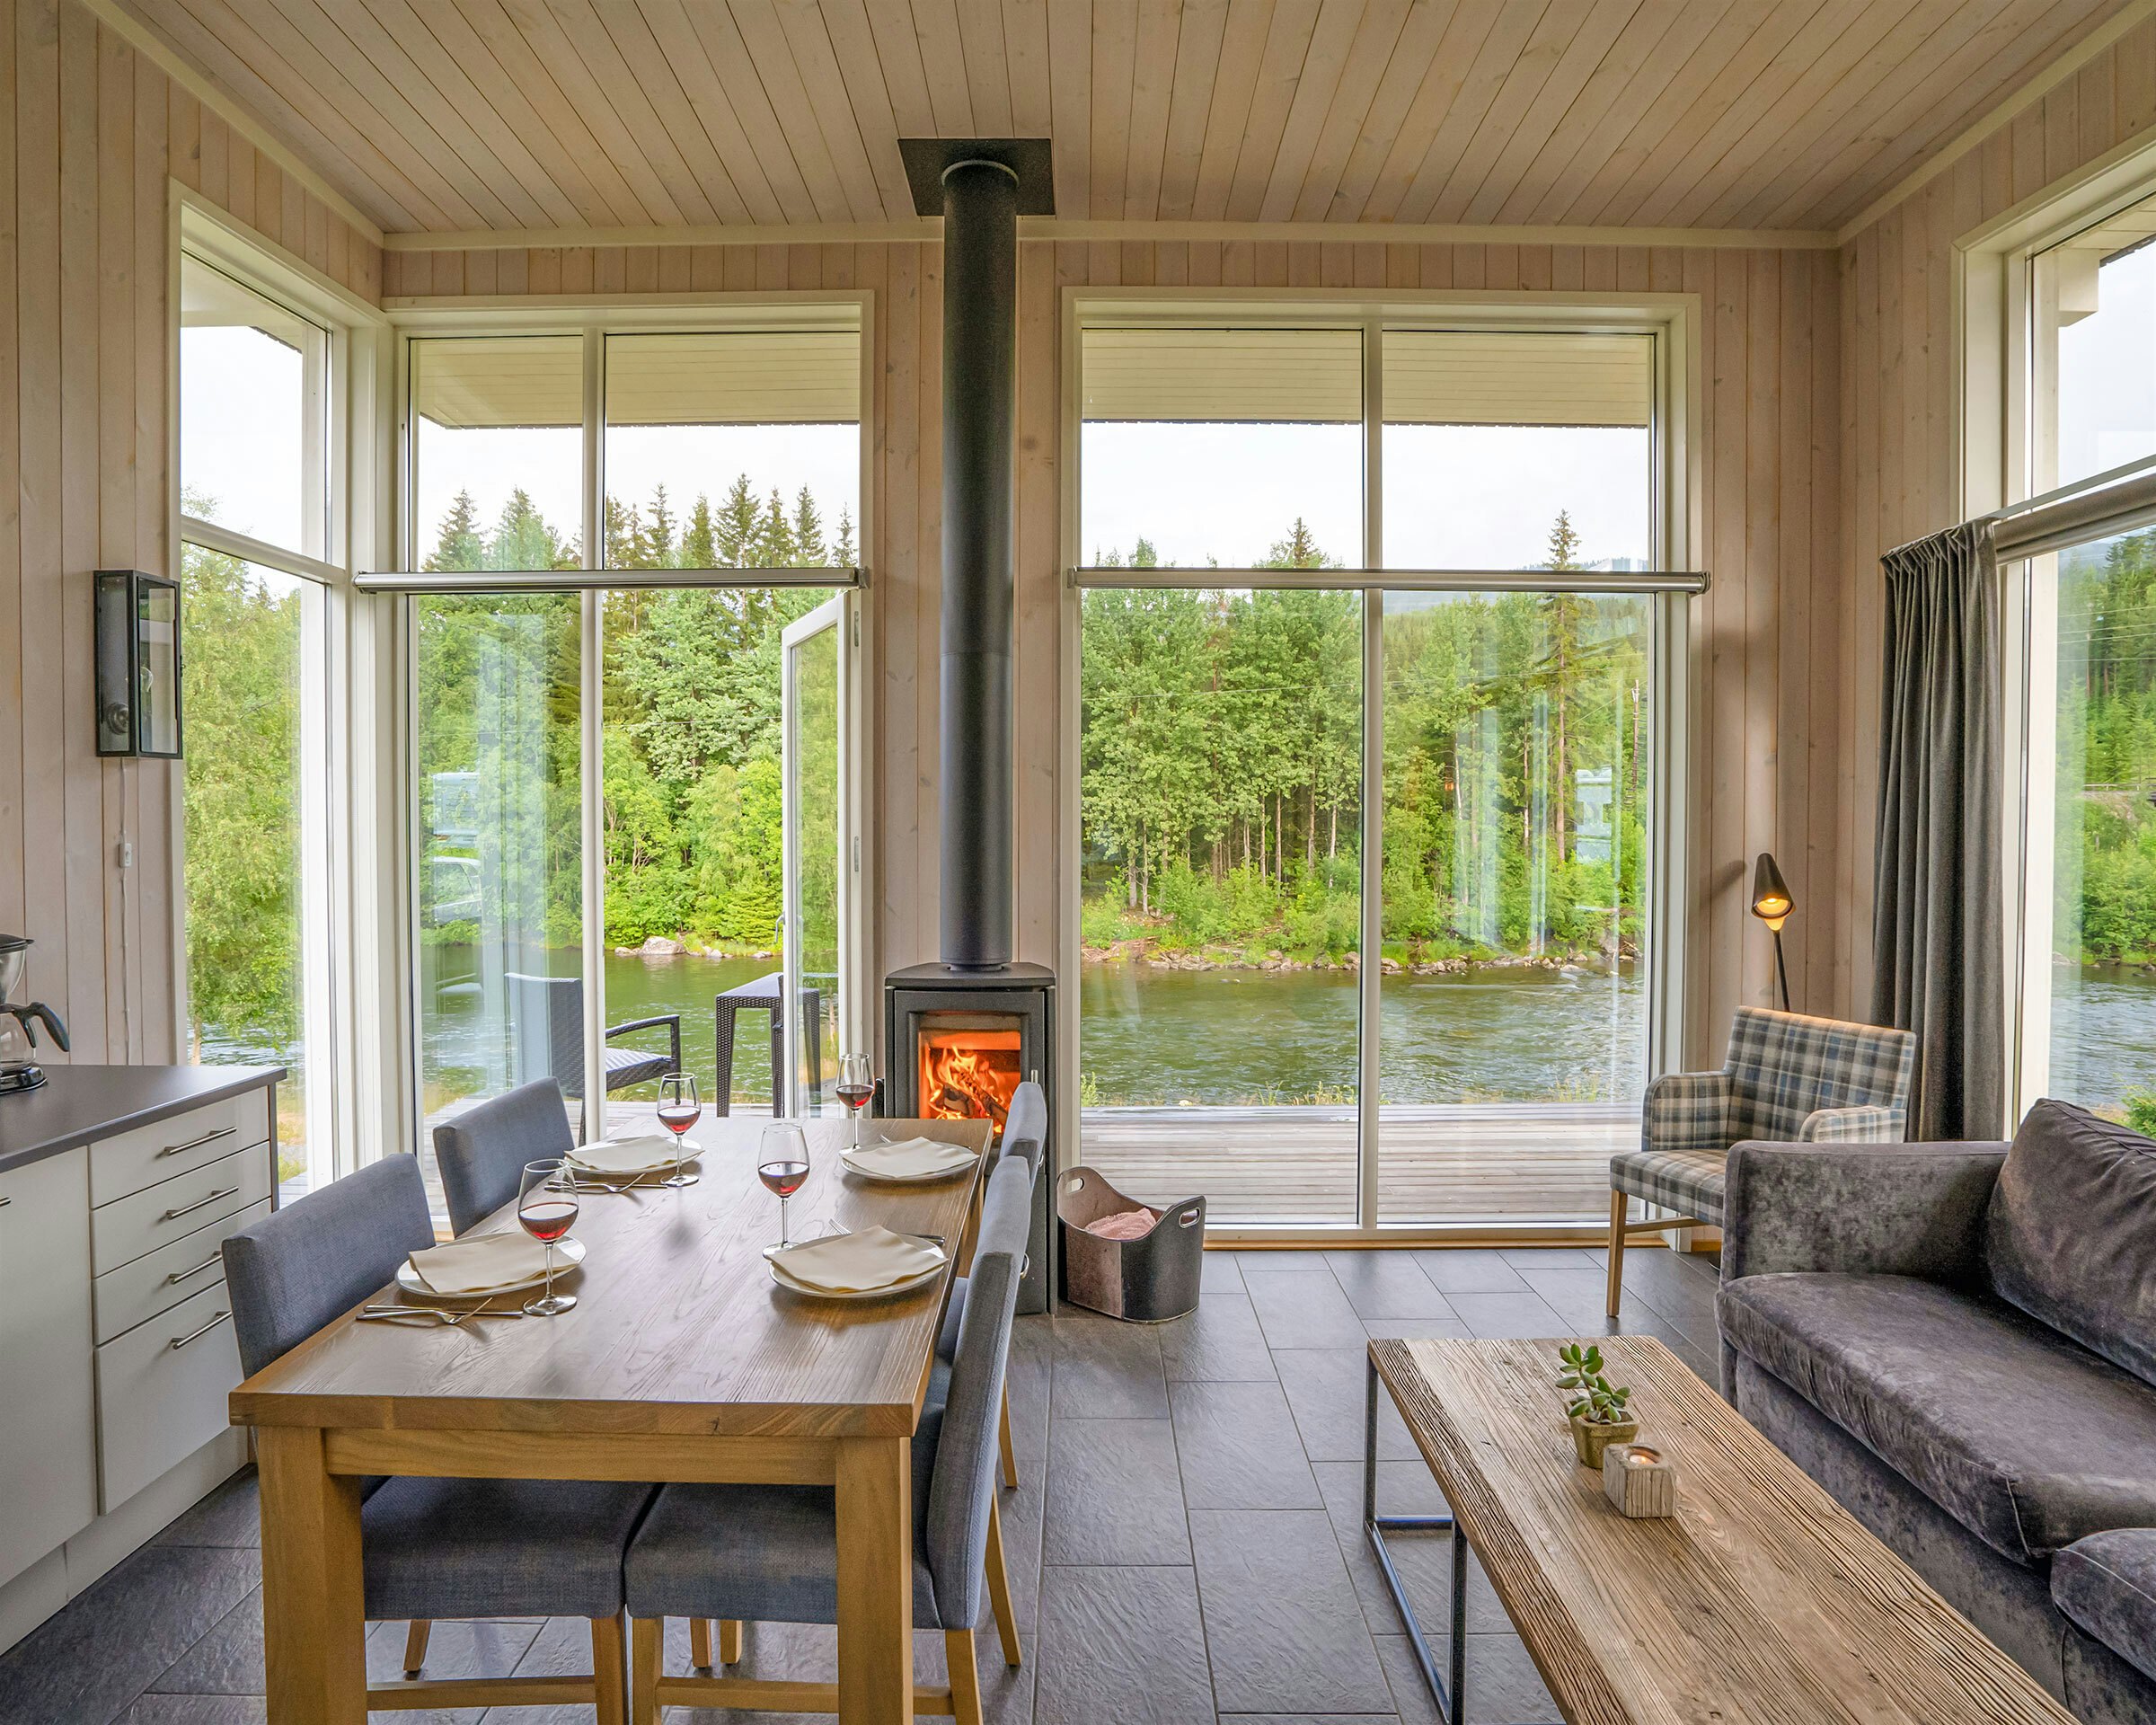 Lys stue med vinduer fra gulv til tak, spisebord sofa og peis. Utsikt over grønne trær og elv.